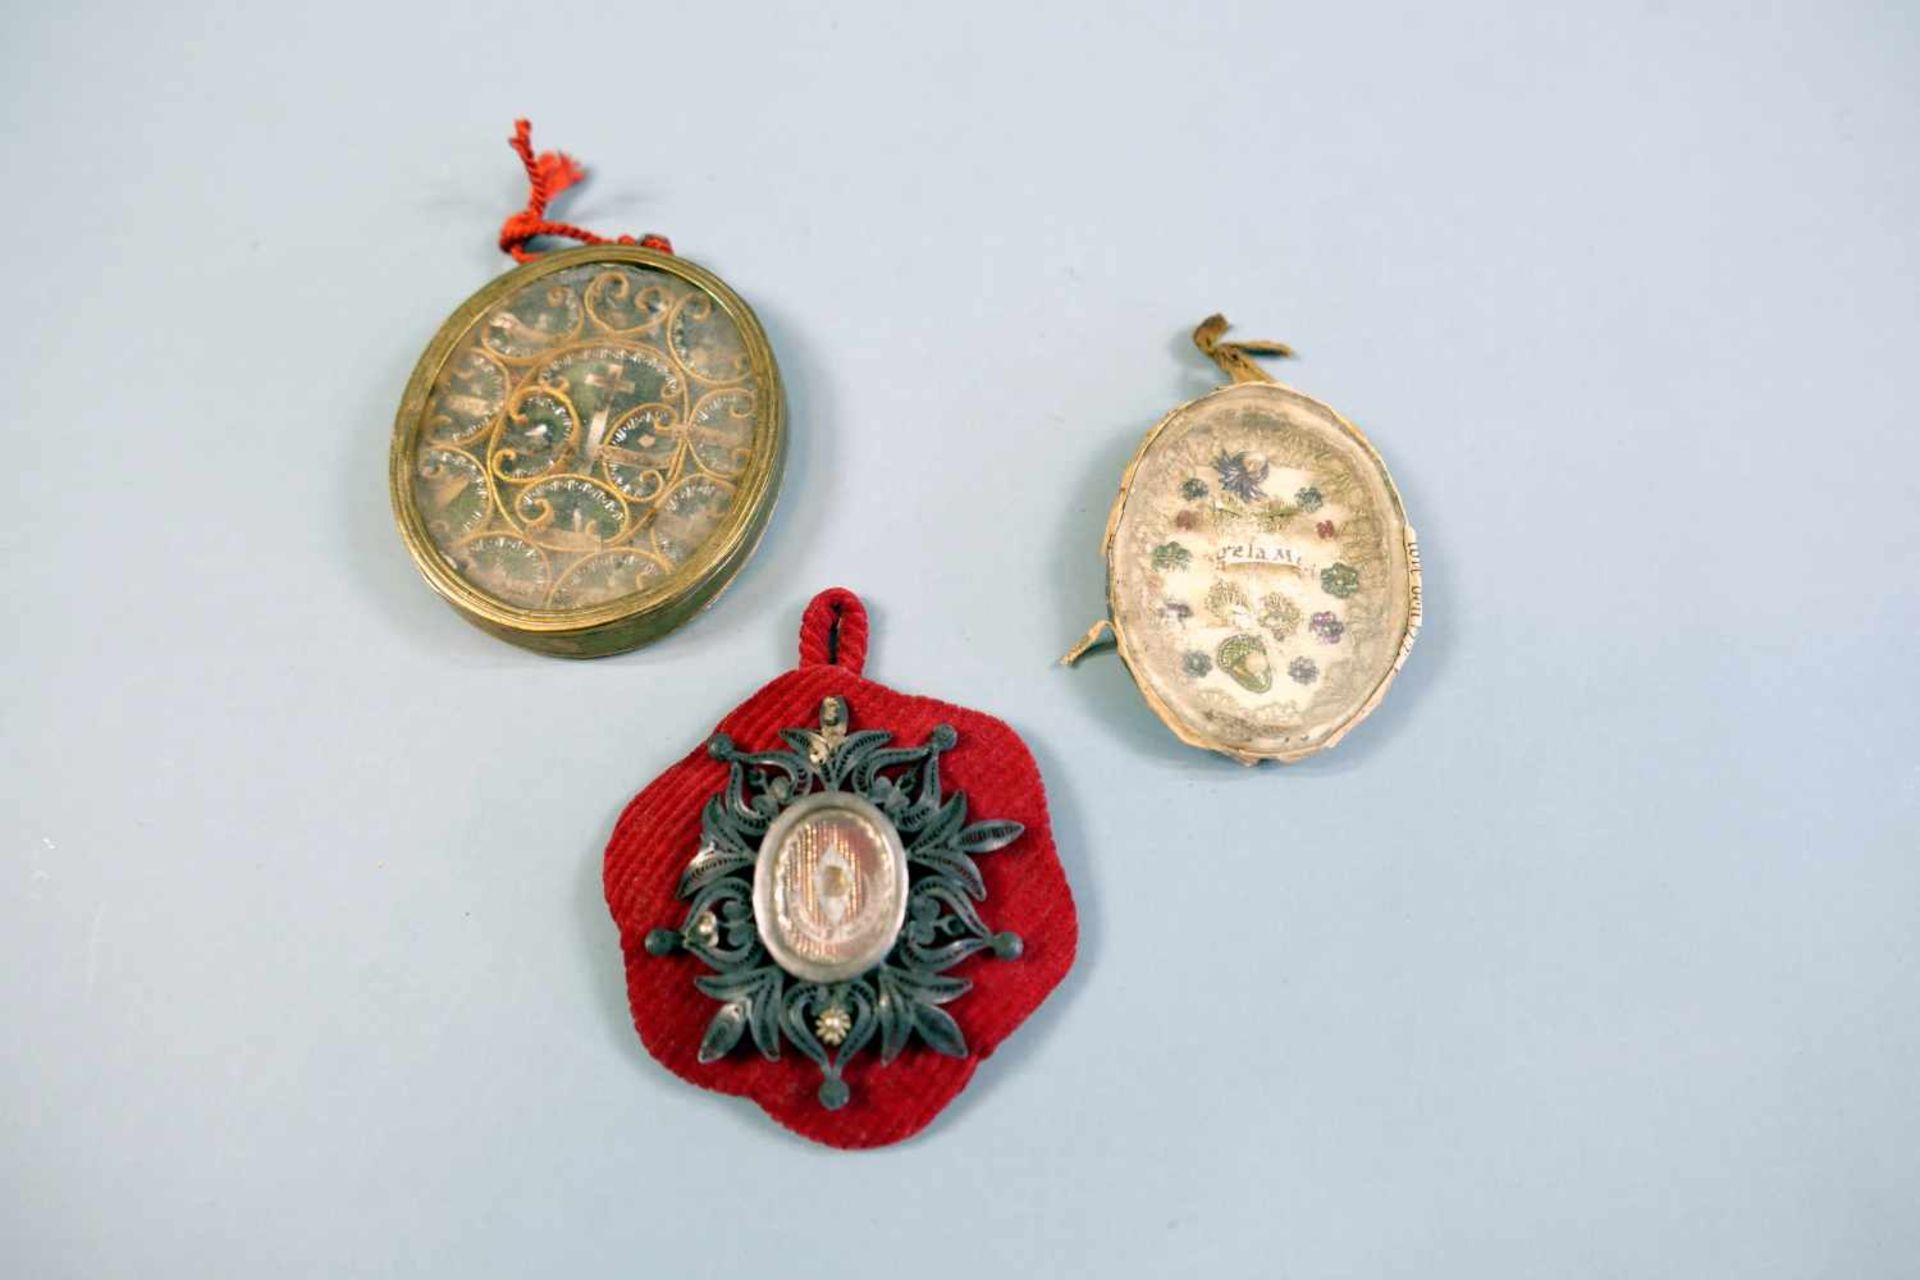 Breverl-KonvolutDie Sammlung besteht aus 3 kleinen Teilen mit Reliquien verschieder Heiligen,